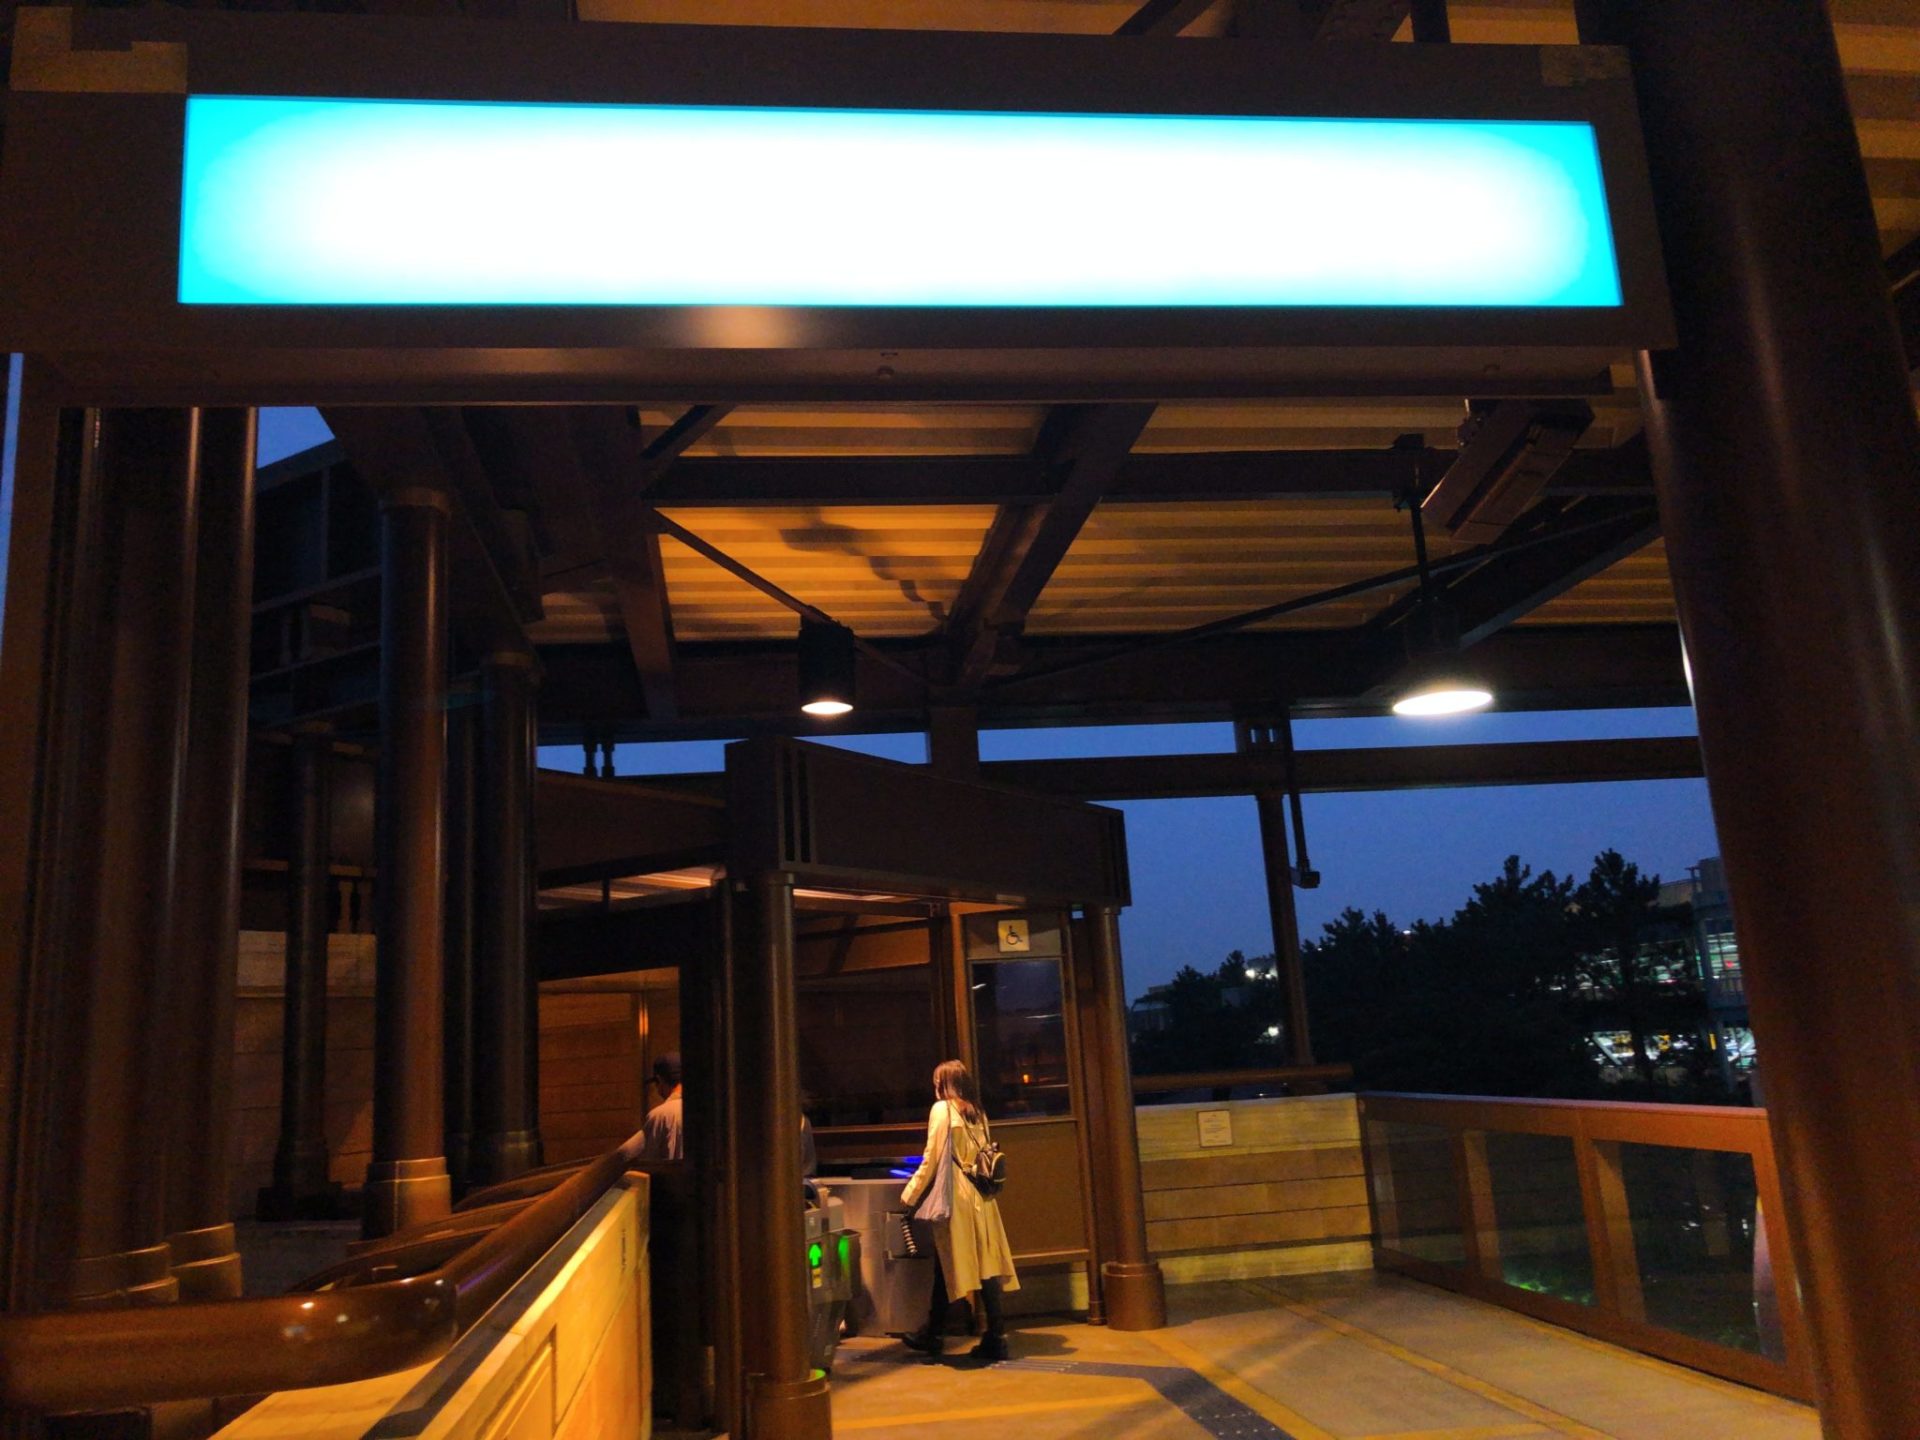 ホテルミラコスタへは、ディズニーリゾートライン「東京ディズニーシー・ステーション」から専用通路が便利